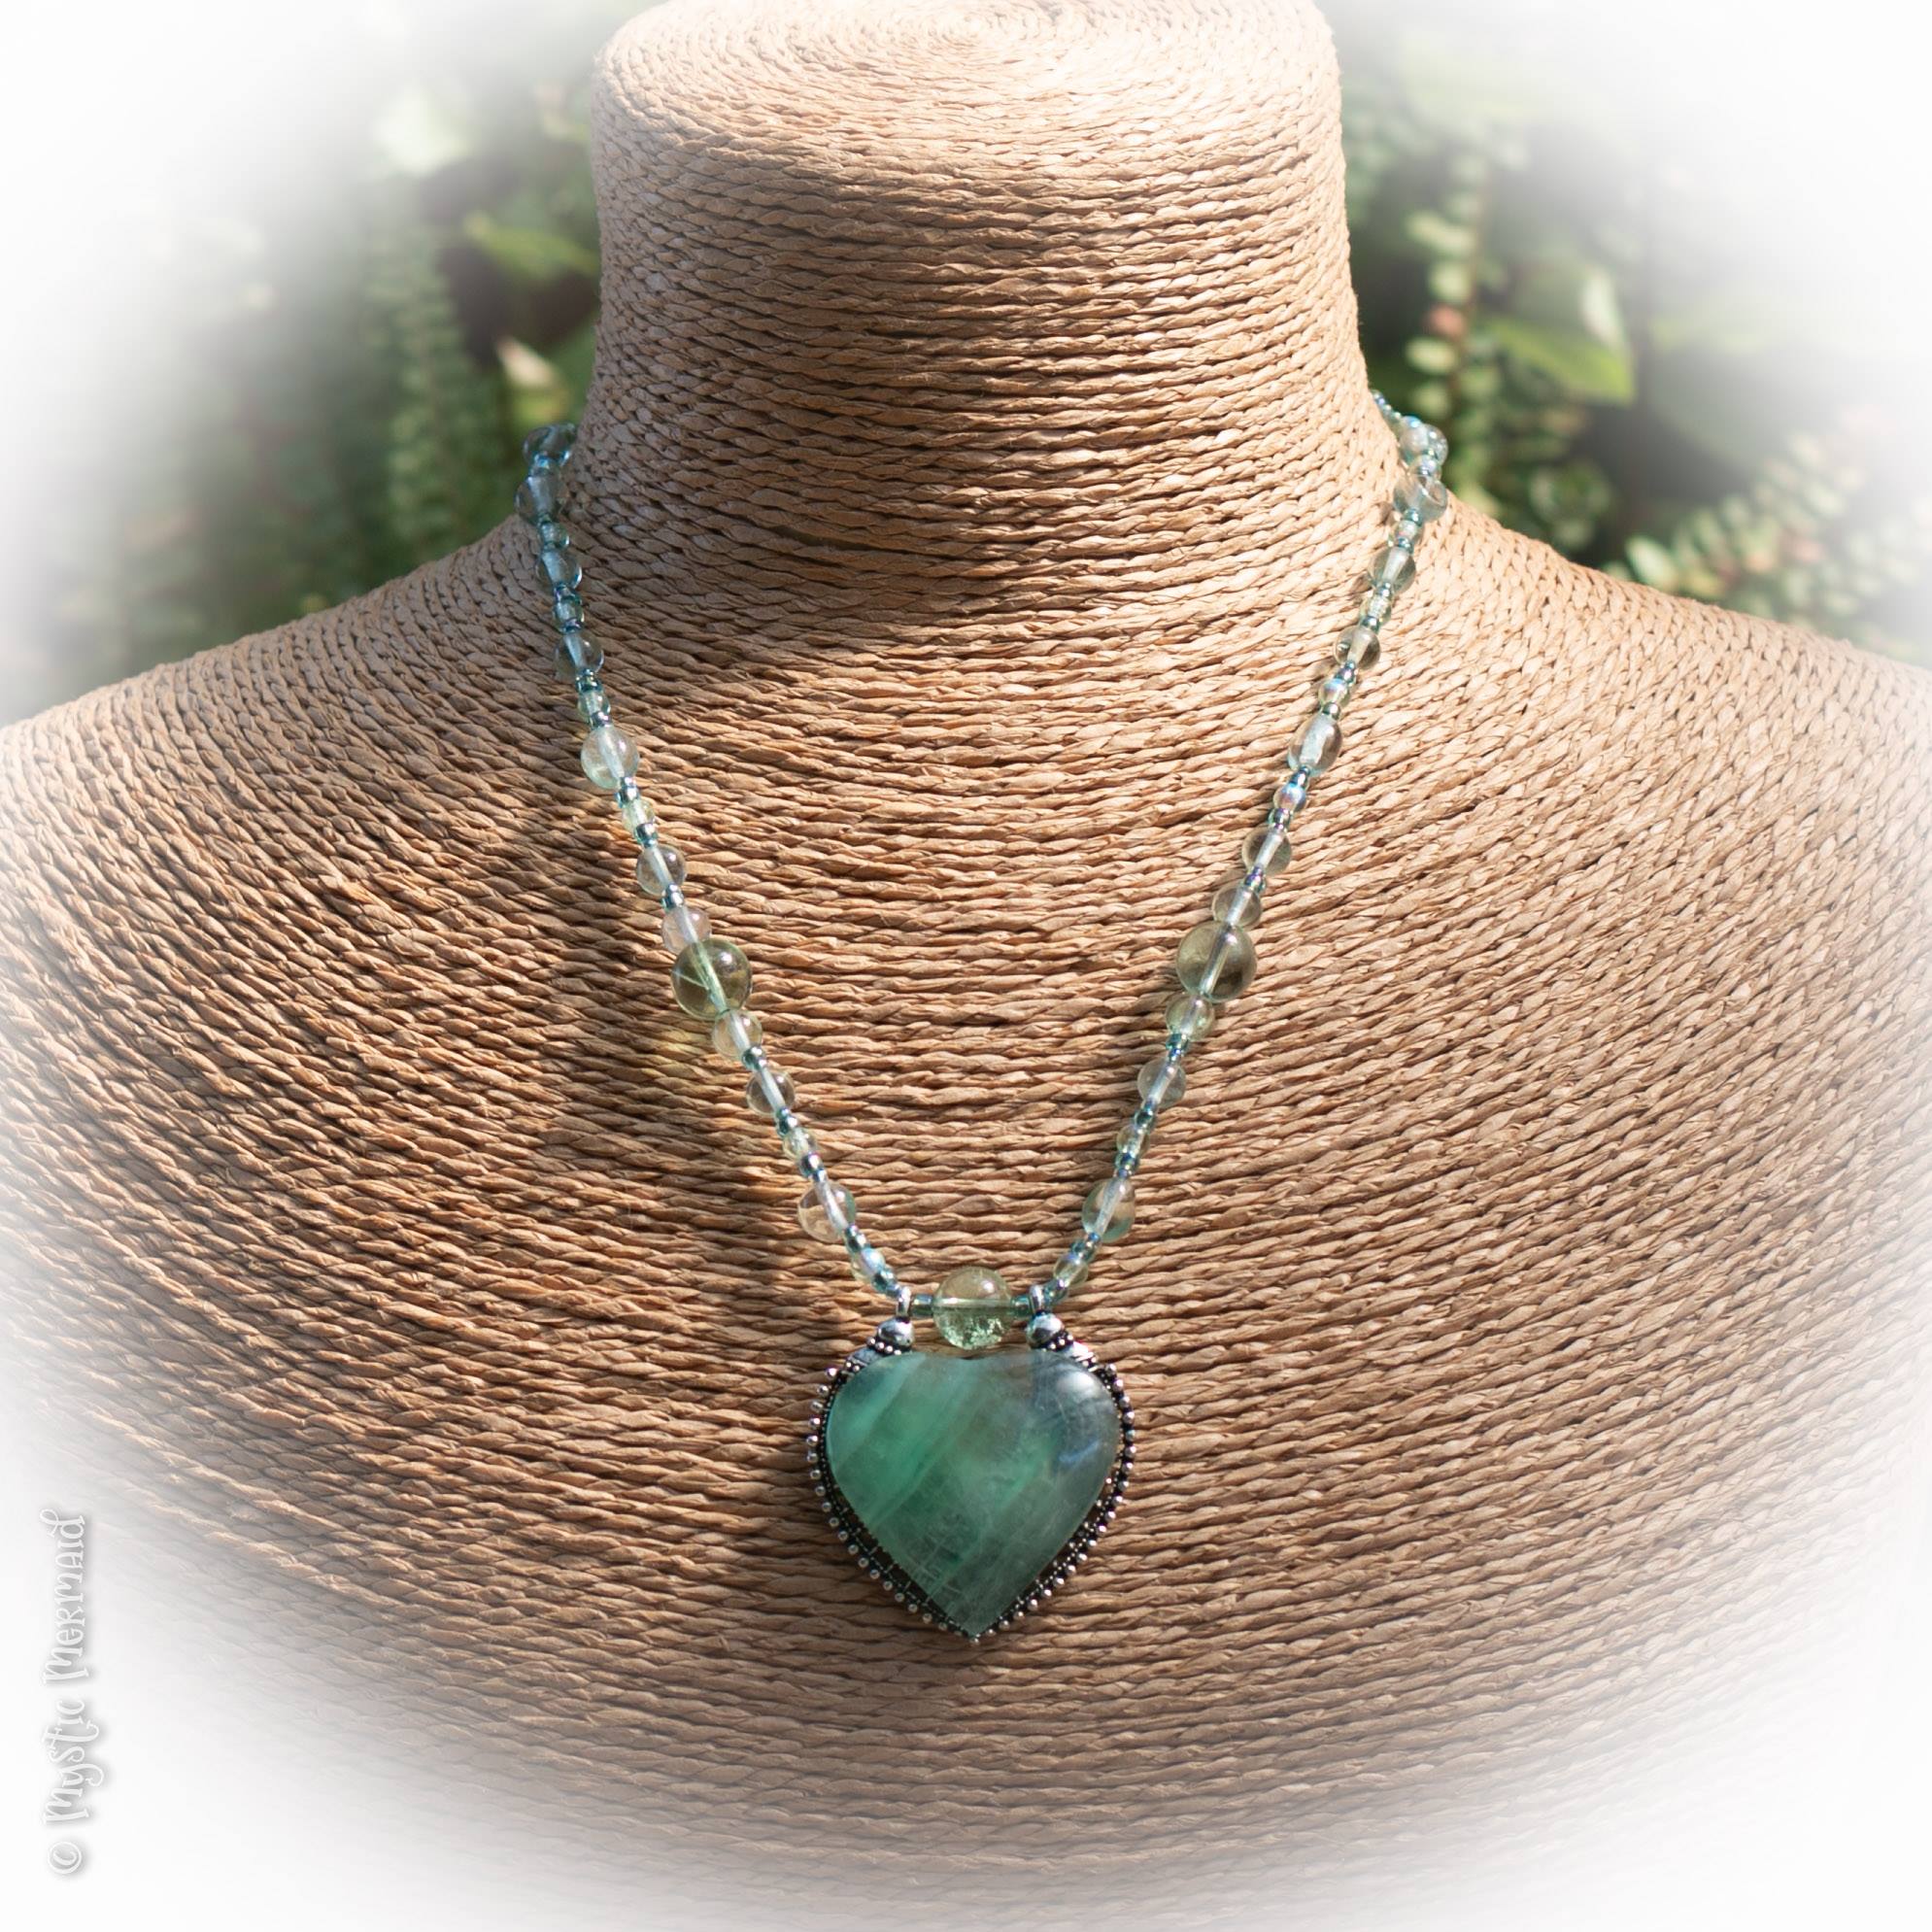 Green Fluorite Heart Necklace